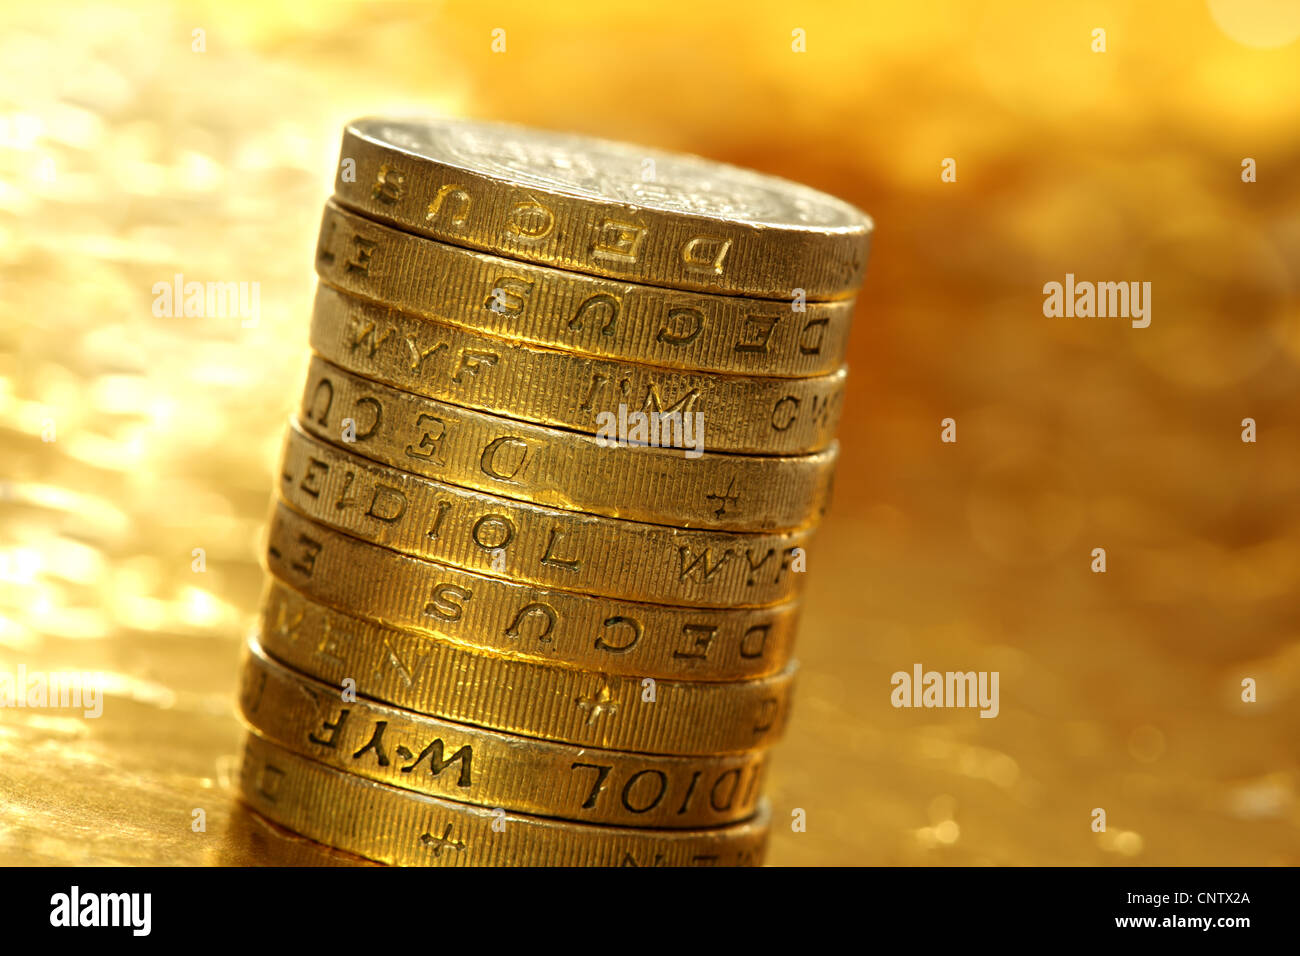 One pound coins Stock Photo